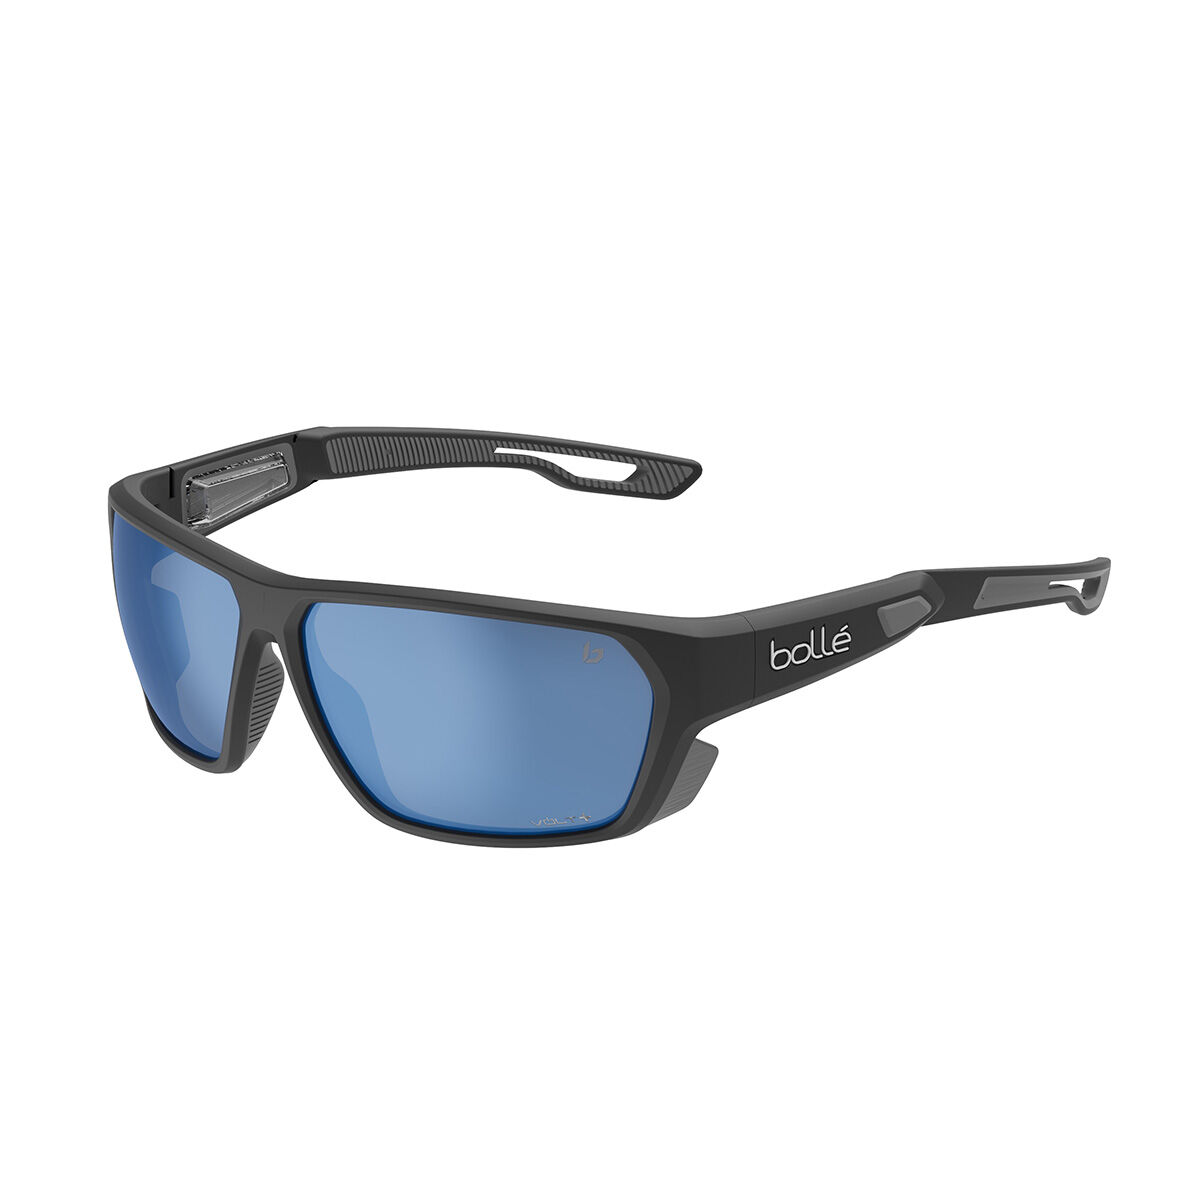 Sport sunglasses prescription - Julbo.com